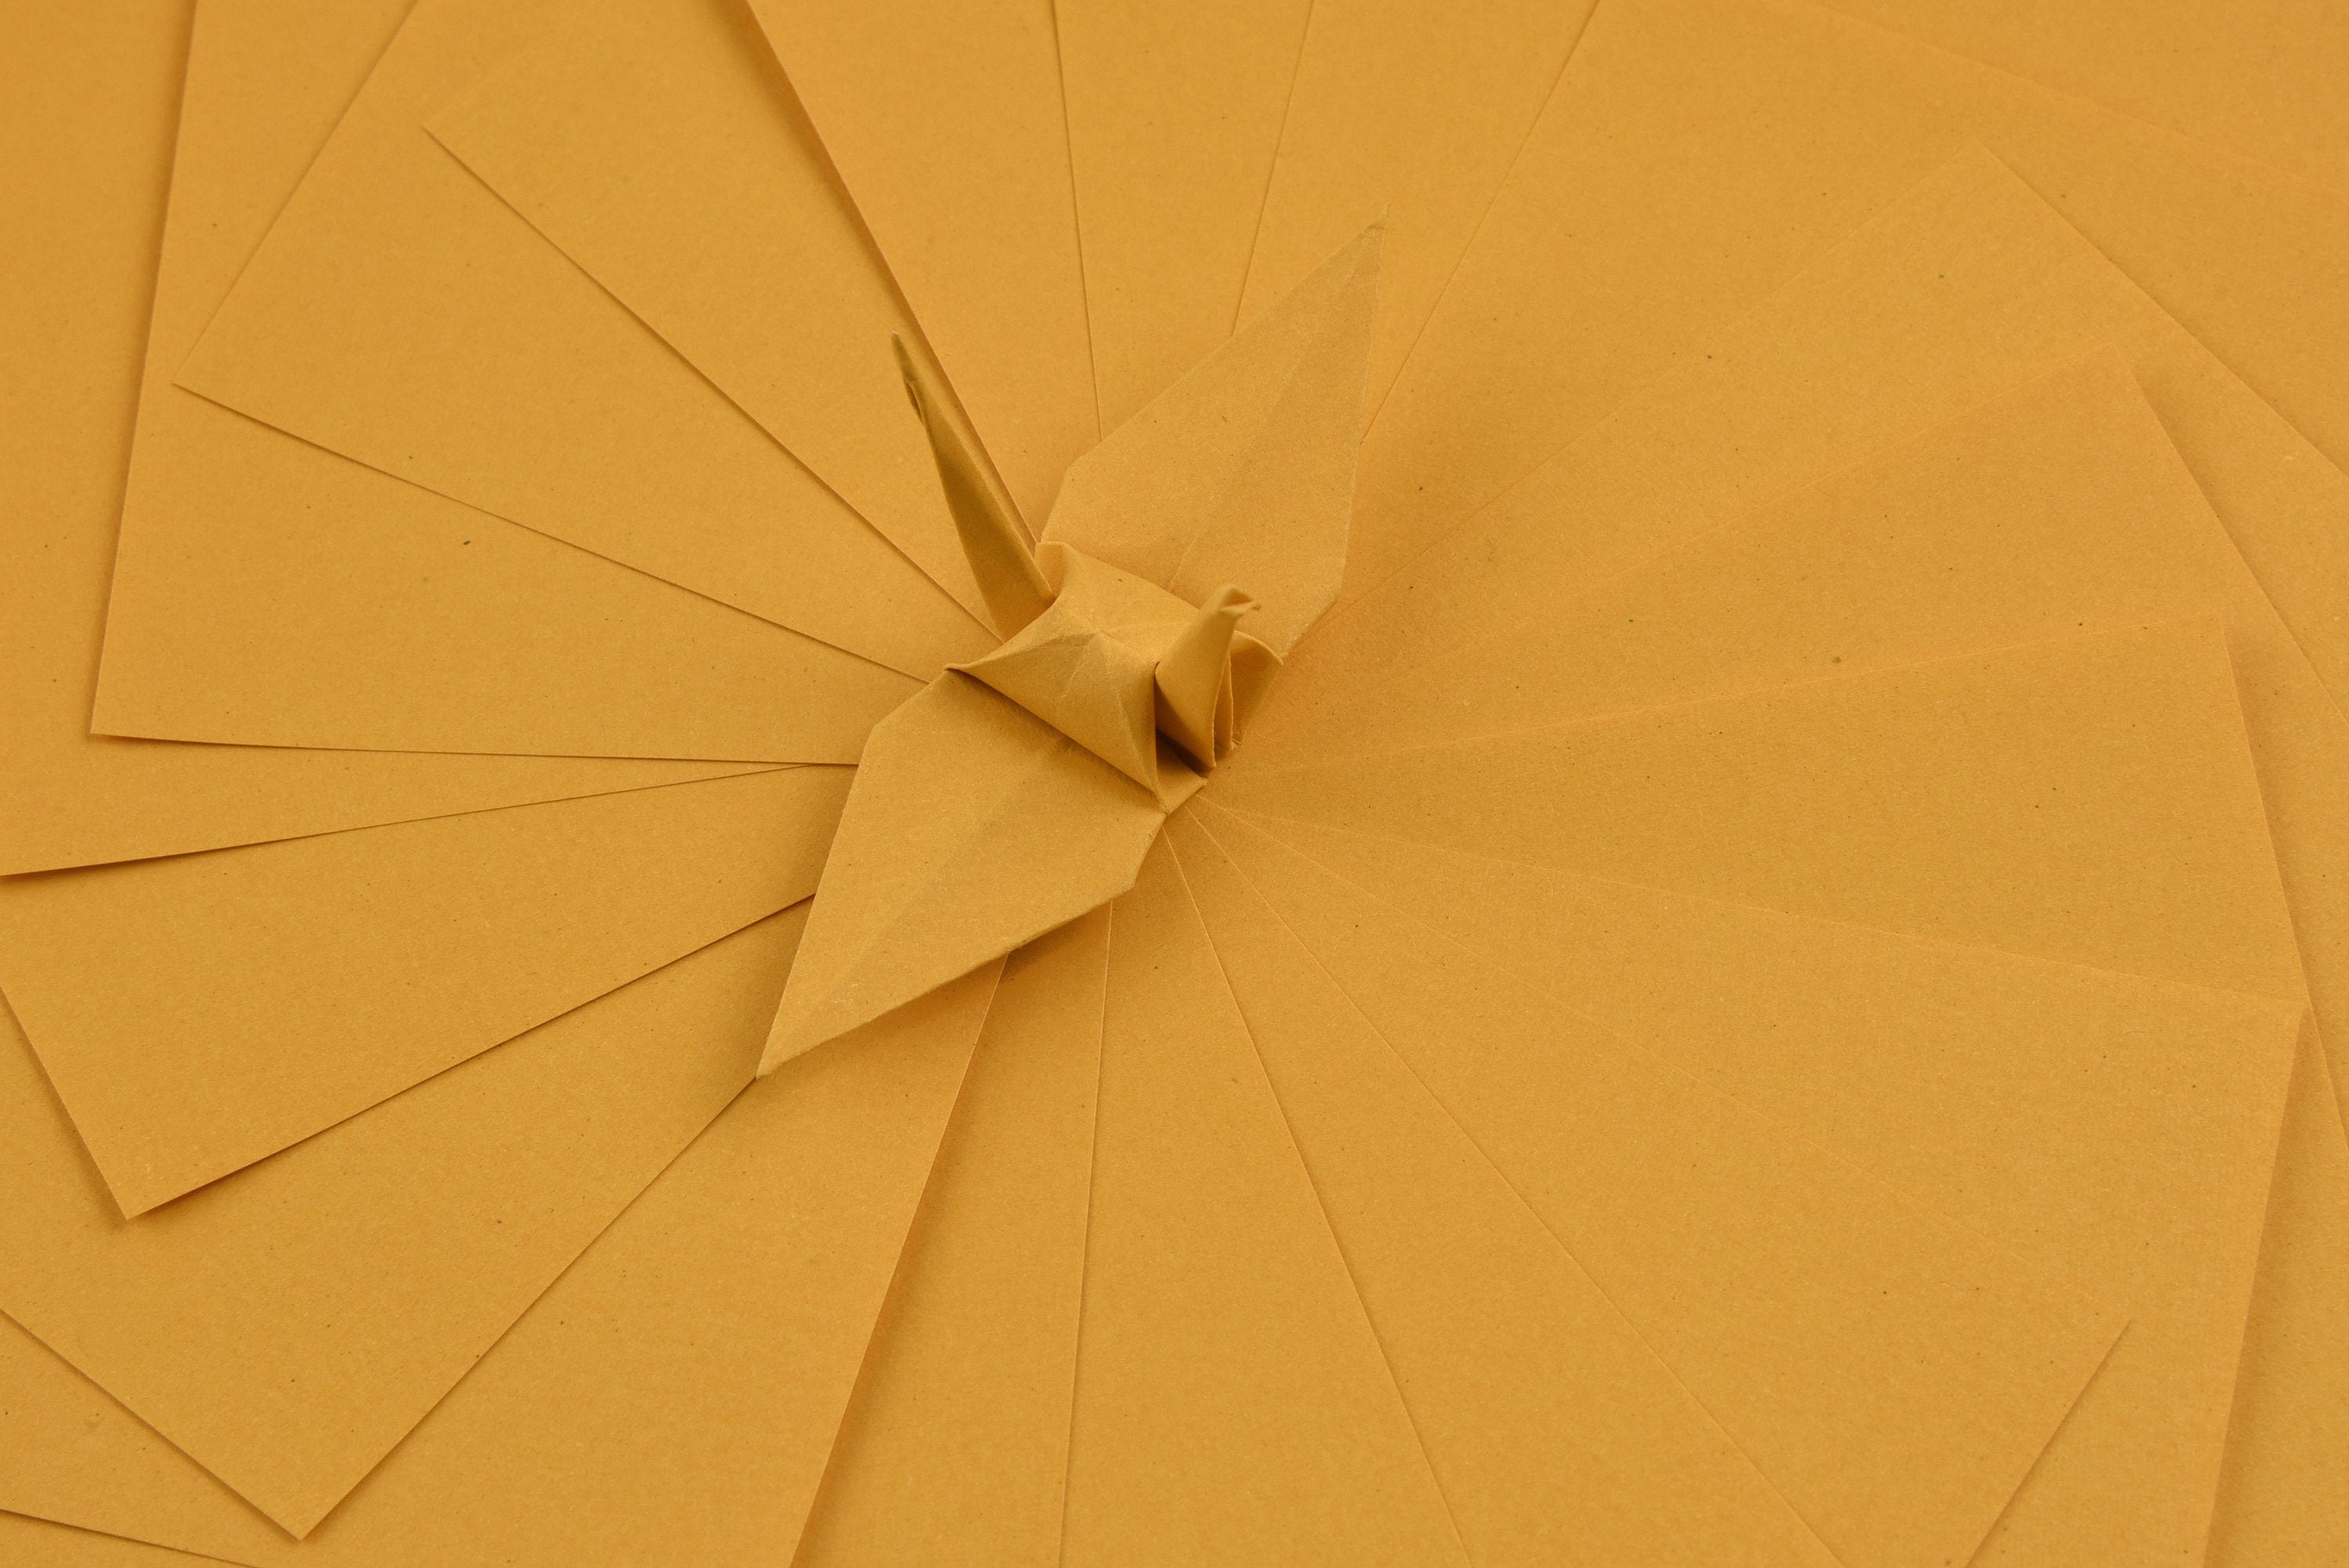 100 fogli di carta origami - 3x3 pollici - Confezione di carta quadrata per piegare, gru origami e decorazioni - S27